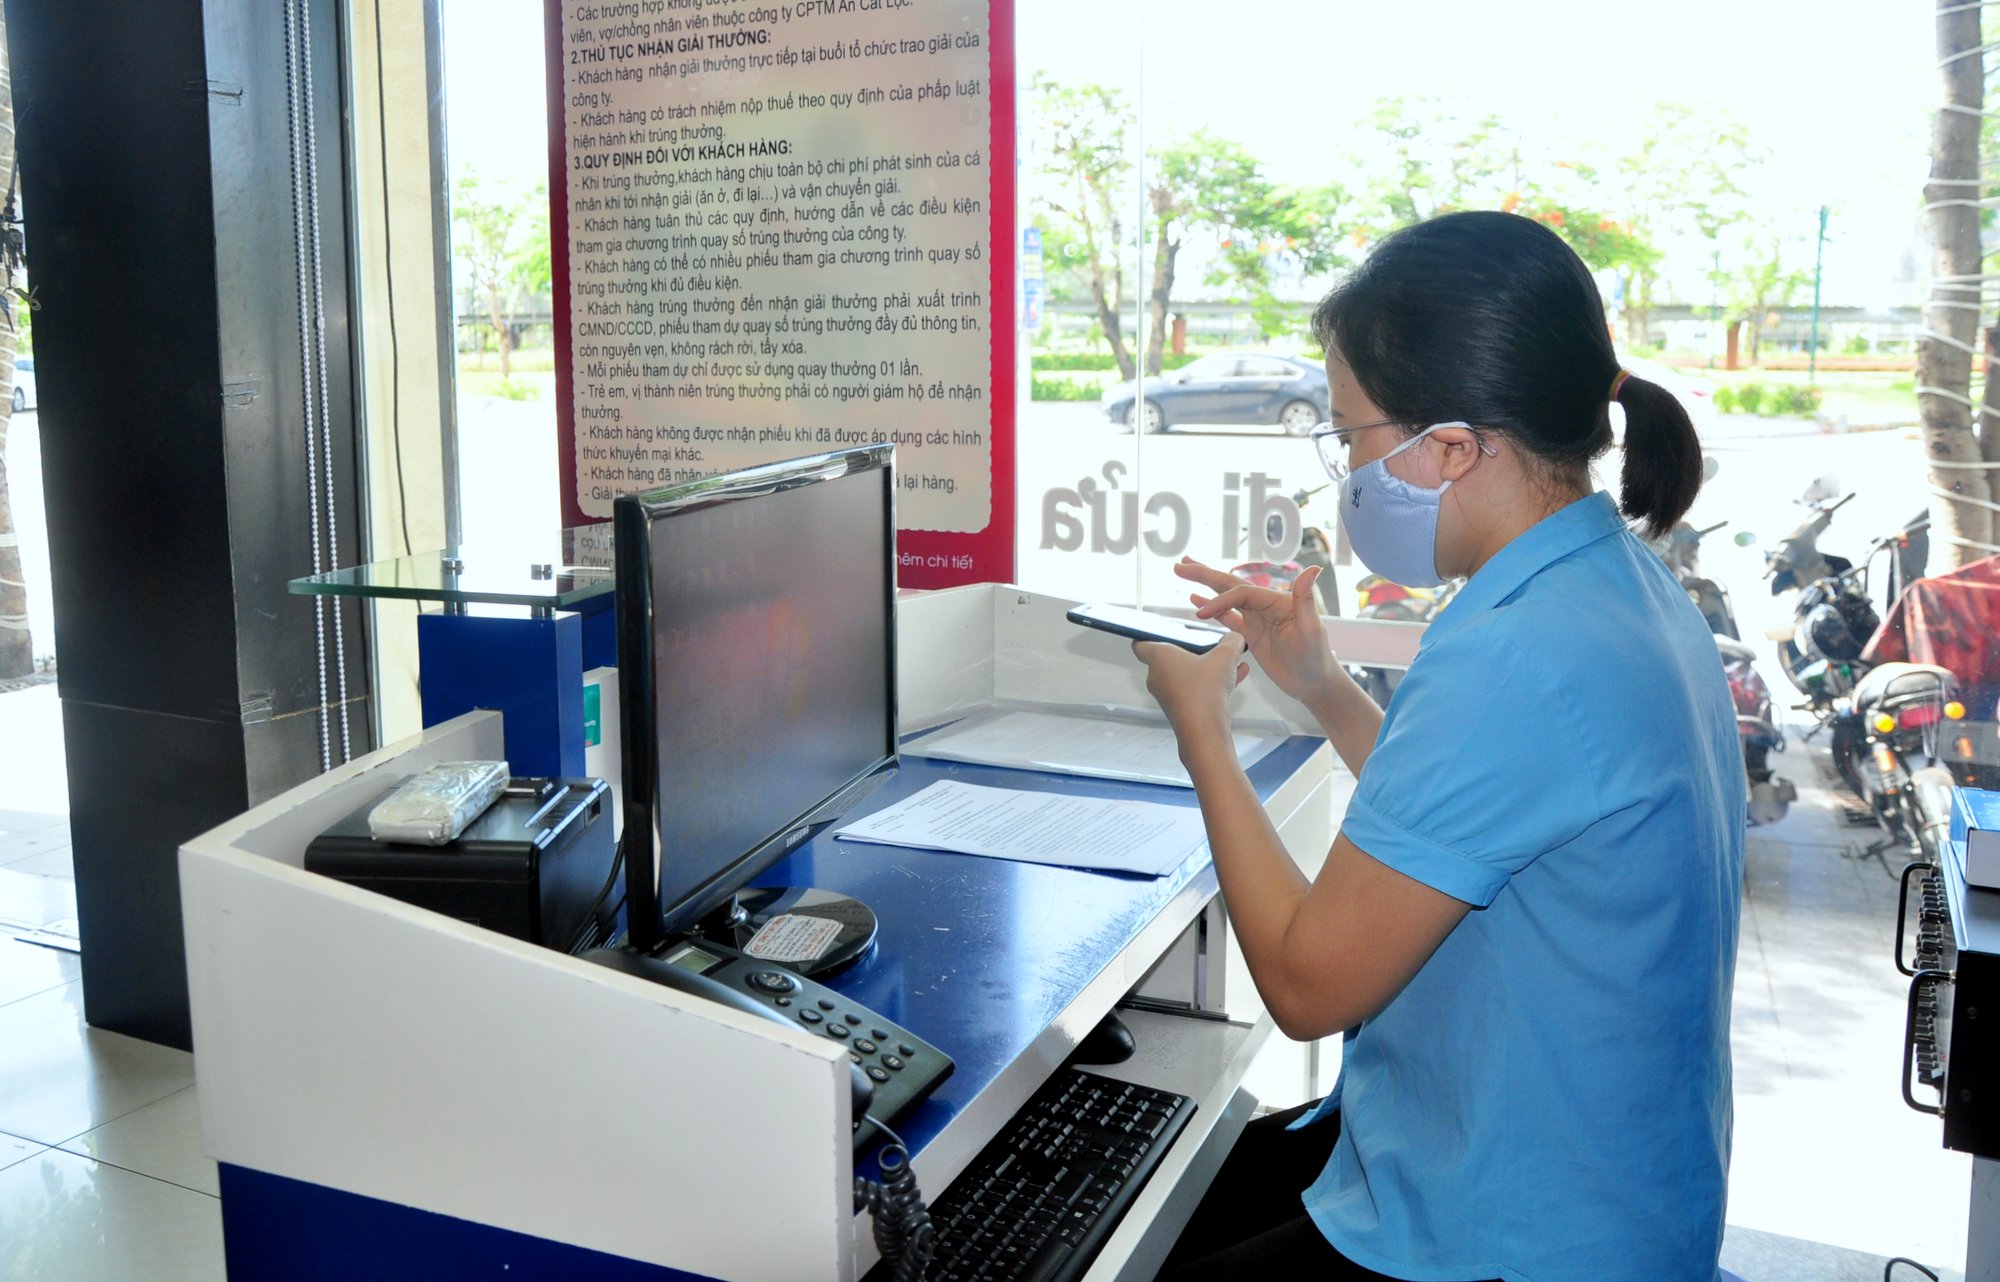 Nhân viên Công ty CP Thương mại An Cát Lộc thực hiện nộp hồ sơ TTHC trên nền tảng dịch vụ công trực tuyến mức độ 4.